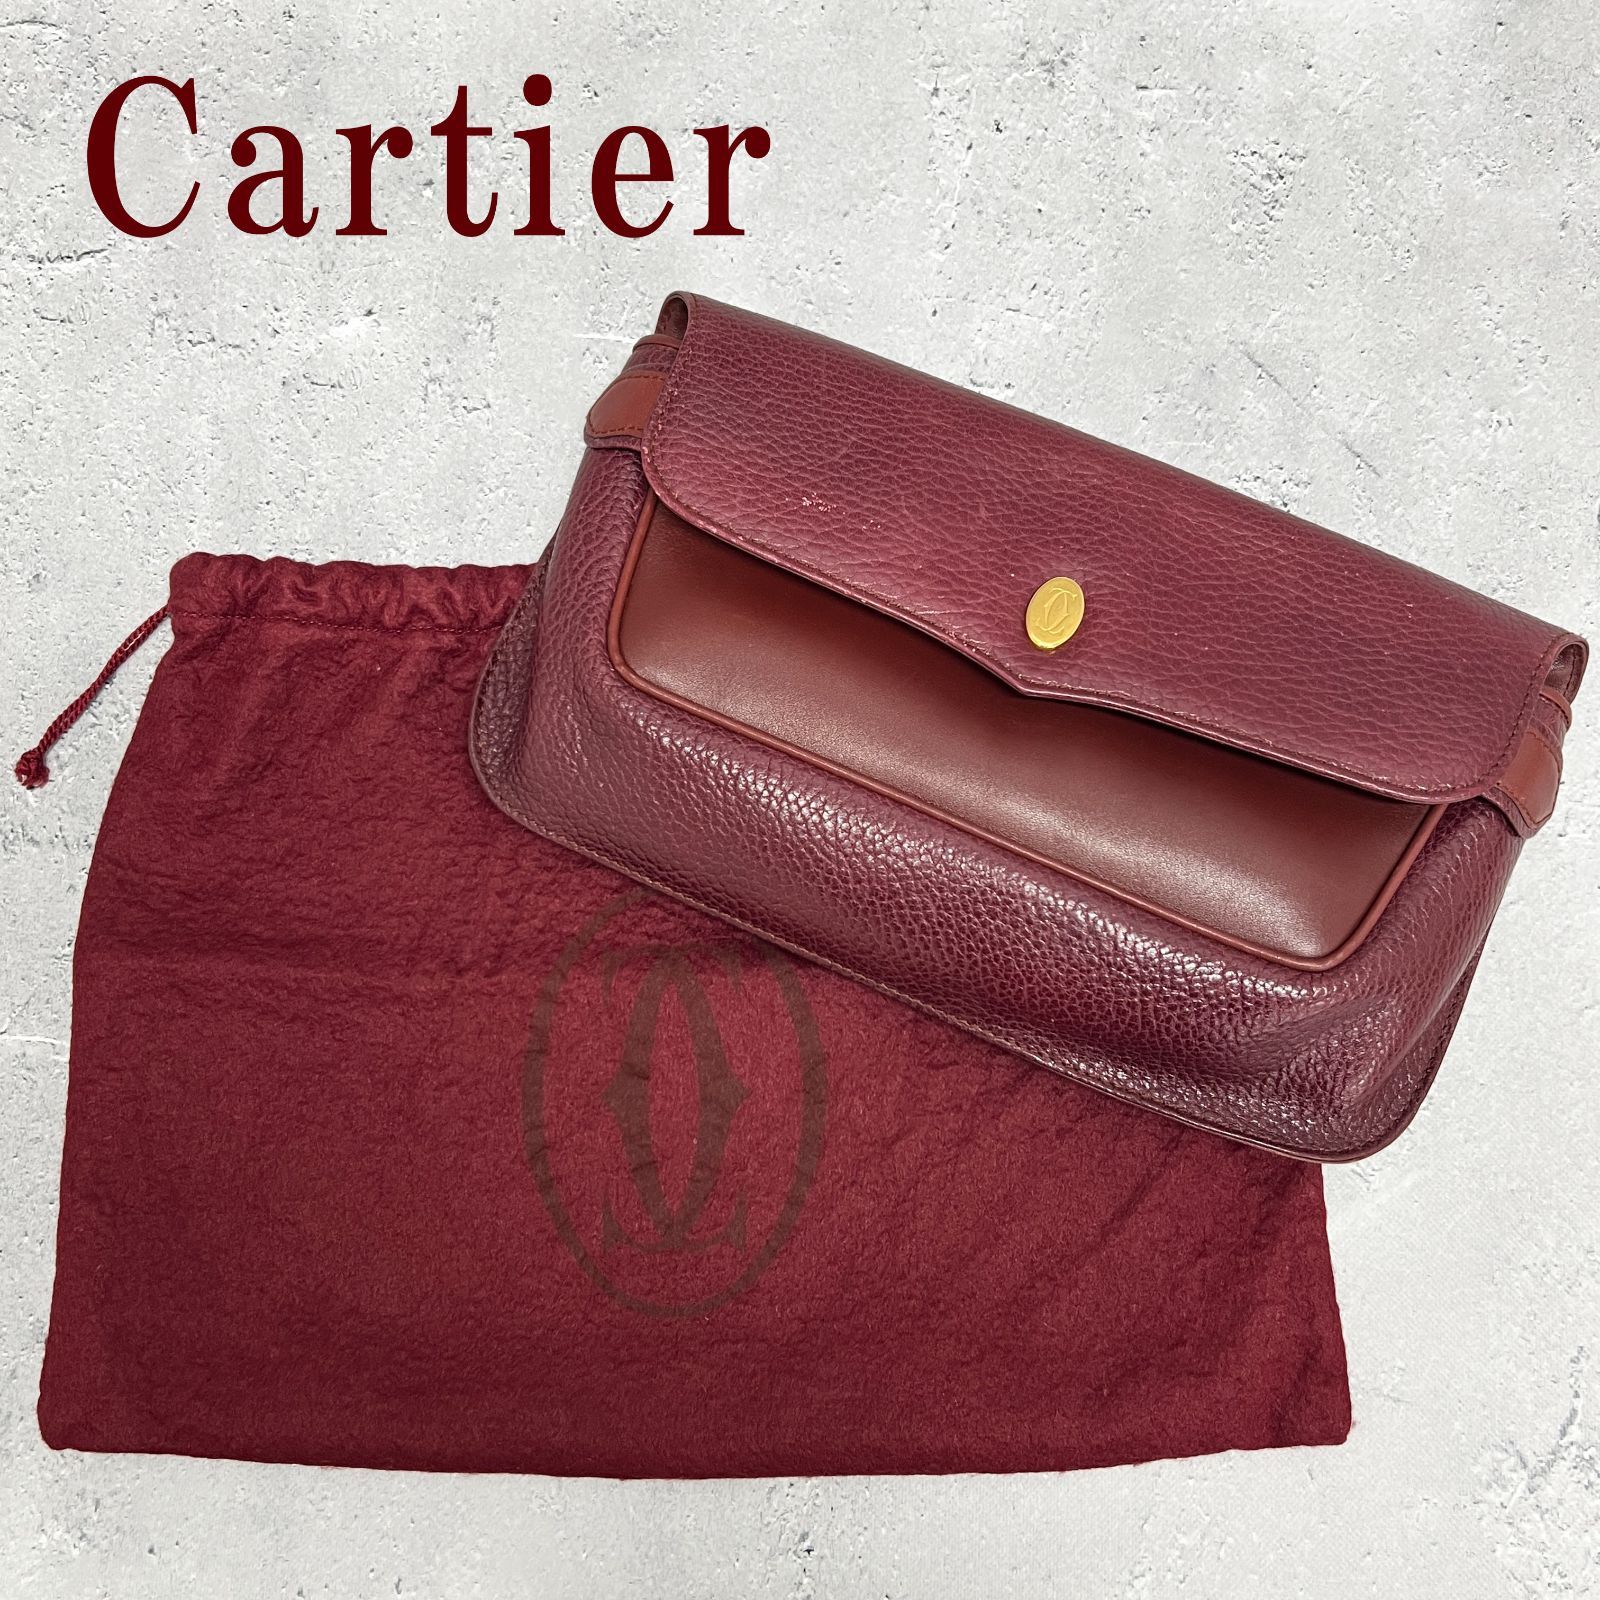 ◆正規品/鑑定済◆ Cartier カルティエ クラッチバック レザー ボルドー マストライン